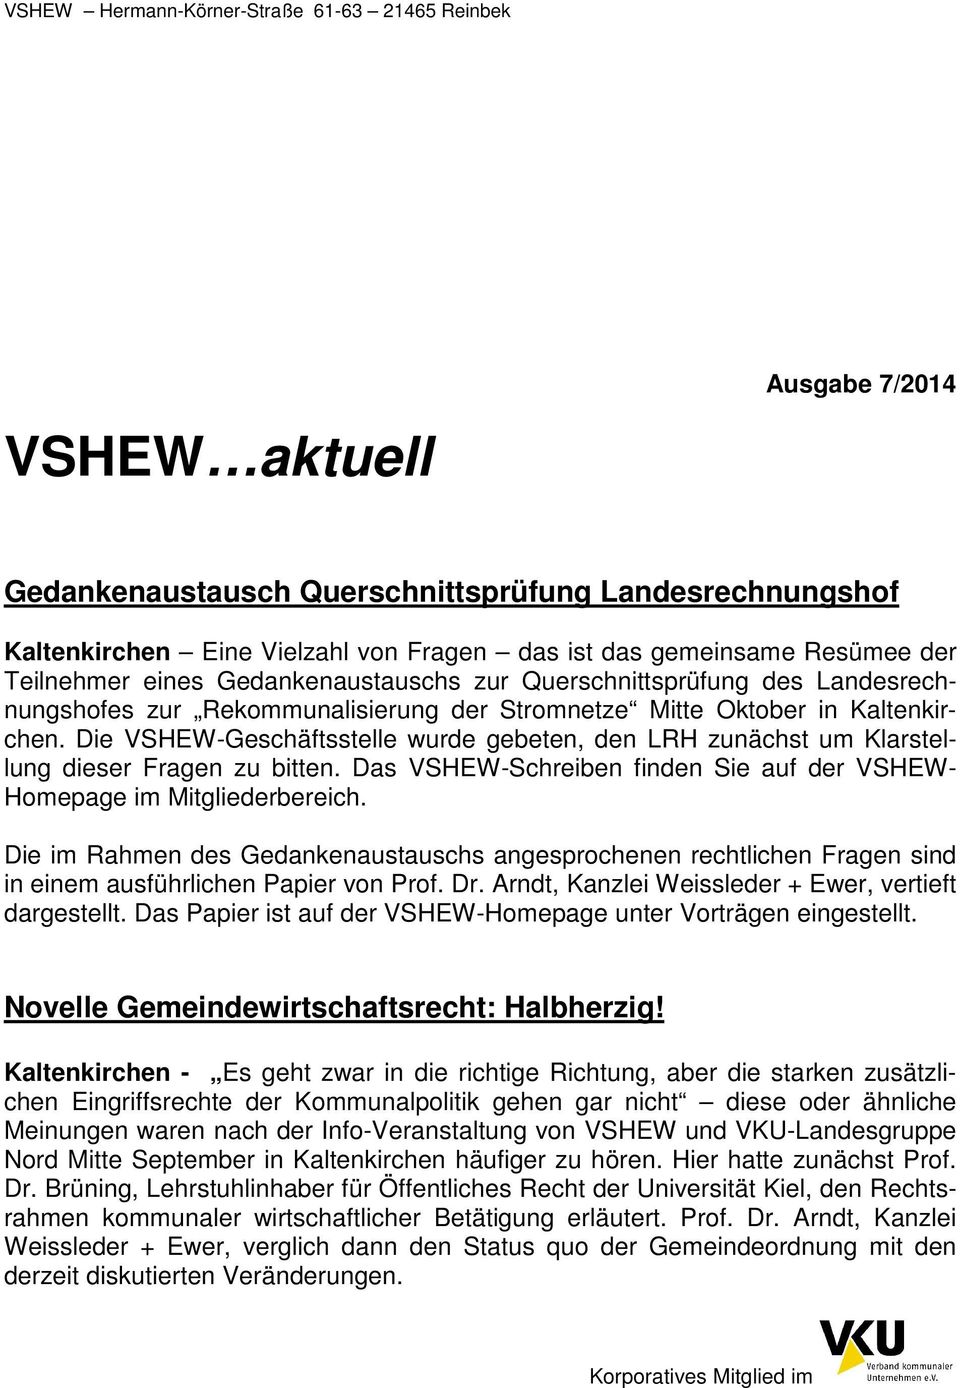 Mitte Oktober in Kaltenkirchen. Die VSHEW-Geschäftsstelle wurde gebeten, den LRH zunächst um Klarstellung dieser Fragen zu bitten.